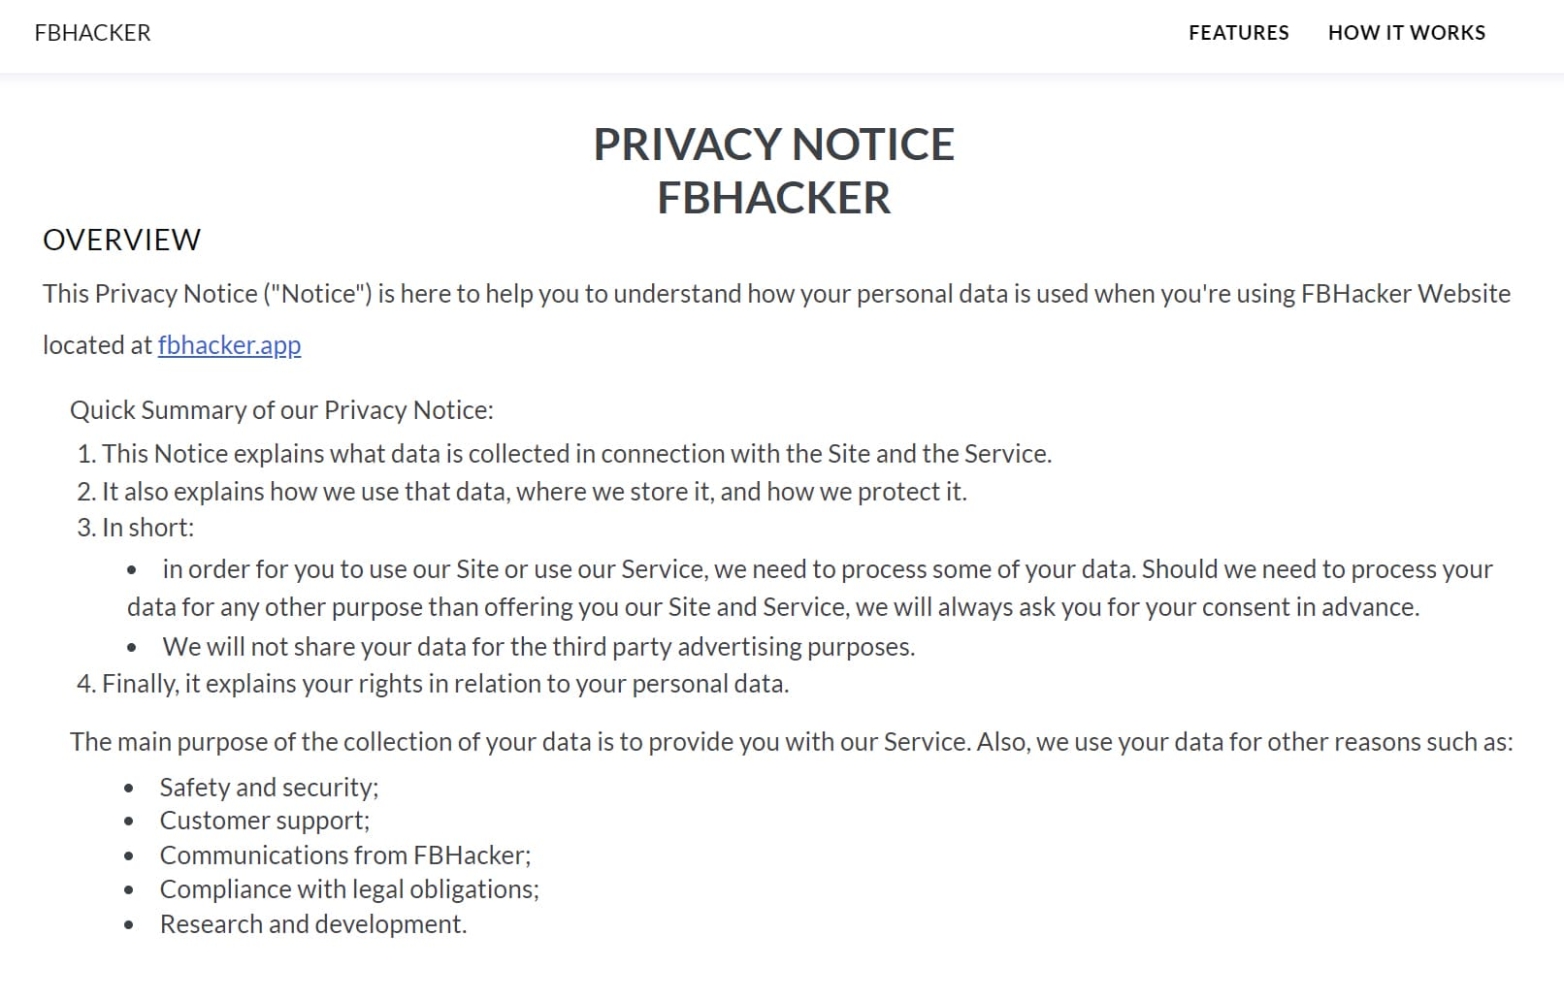 Ver en FBhacker sitio web donde se describen los términos de privacidad